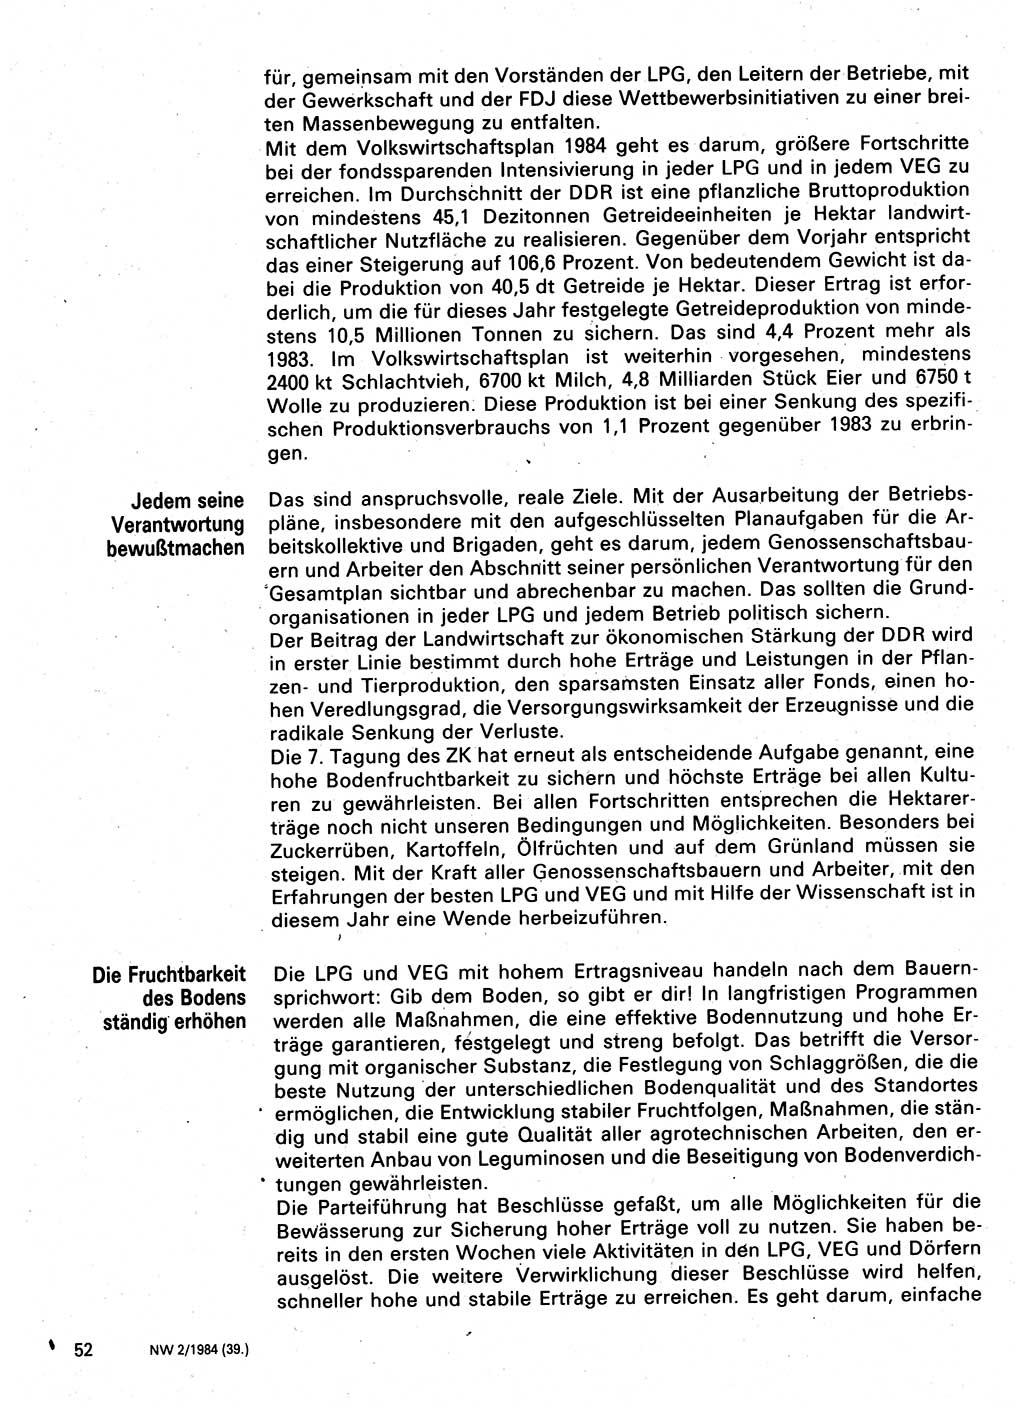 Neuer Weg (NW), Organ des Zentralkomitees (ZK) der SED (Sozialistische Einheitspartei Deutschlands) für Fragen des Parteilebens, 39. Jahrgang [Deutsche Demokratische Republik (DDR)] 1984, Seite 52 (NW ZK SED DDR 1984, S. 52)